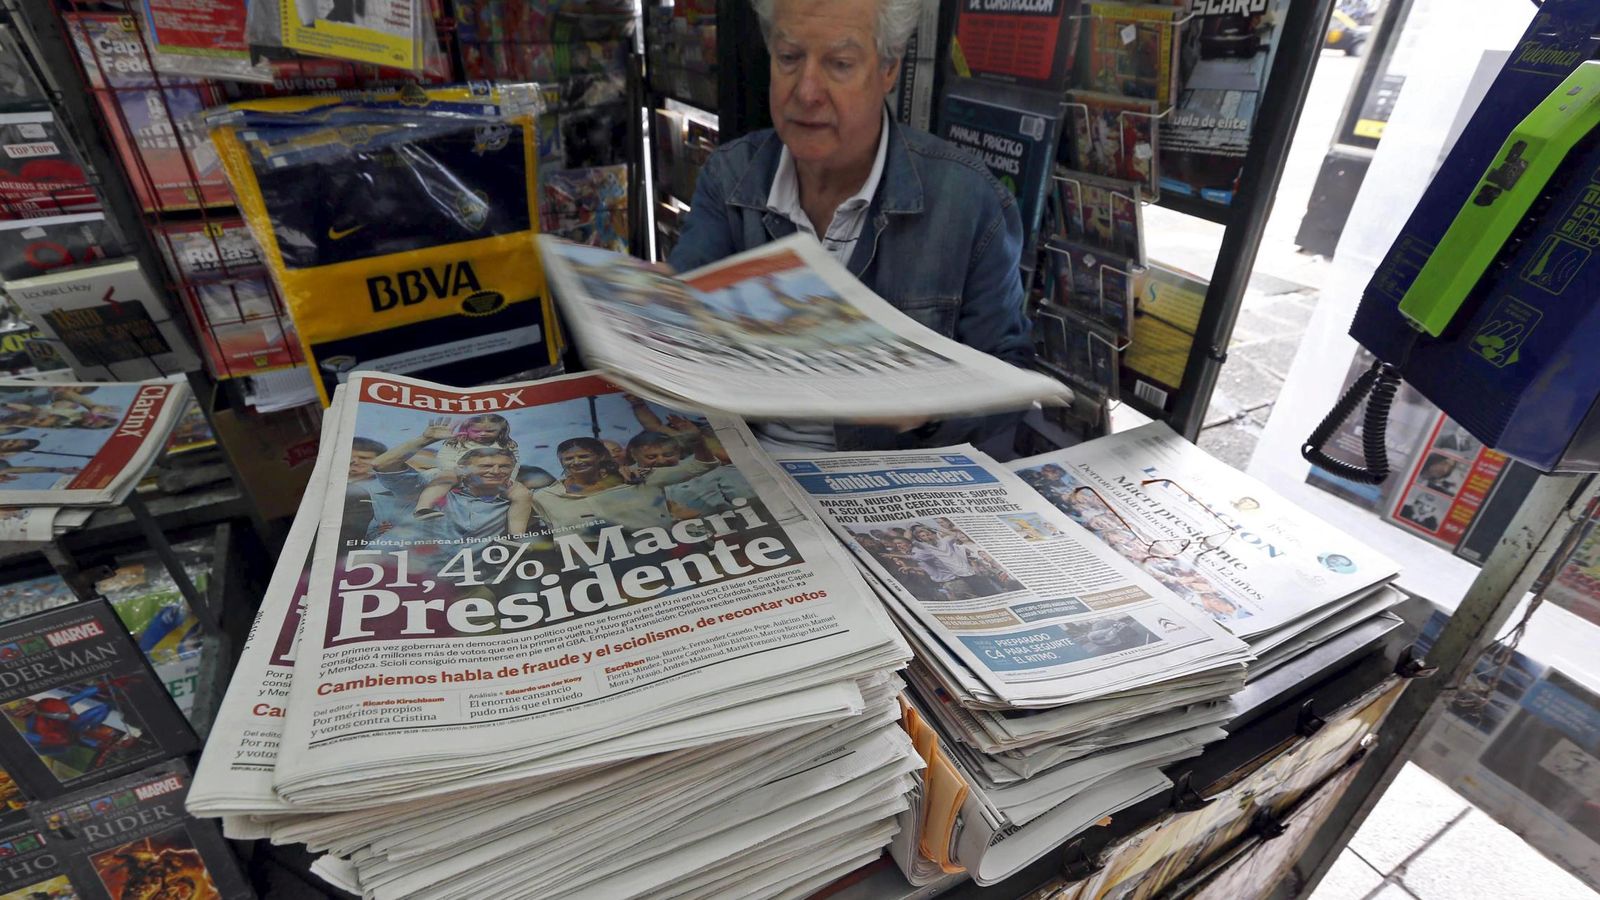 Foto: Un quiosquero de Buenos Aires vende periódicos con el titular "Macri Presidente", el 23 de noviembre de 2015 (Reuters)